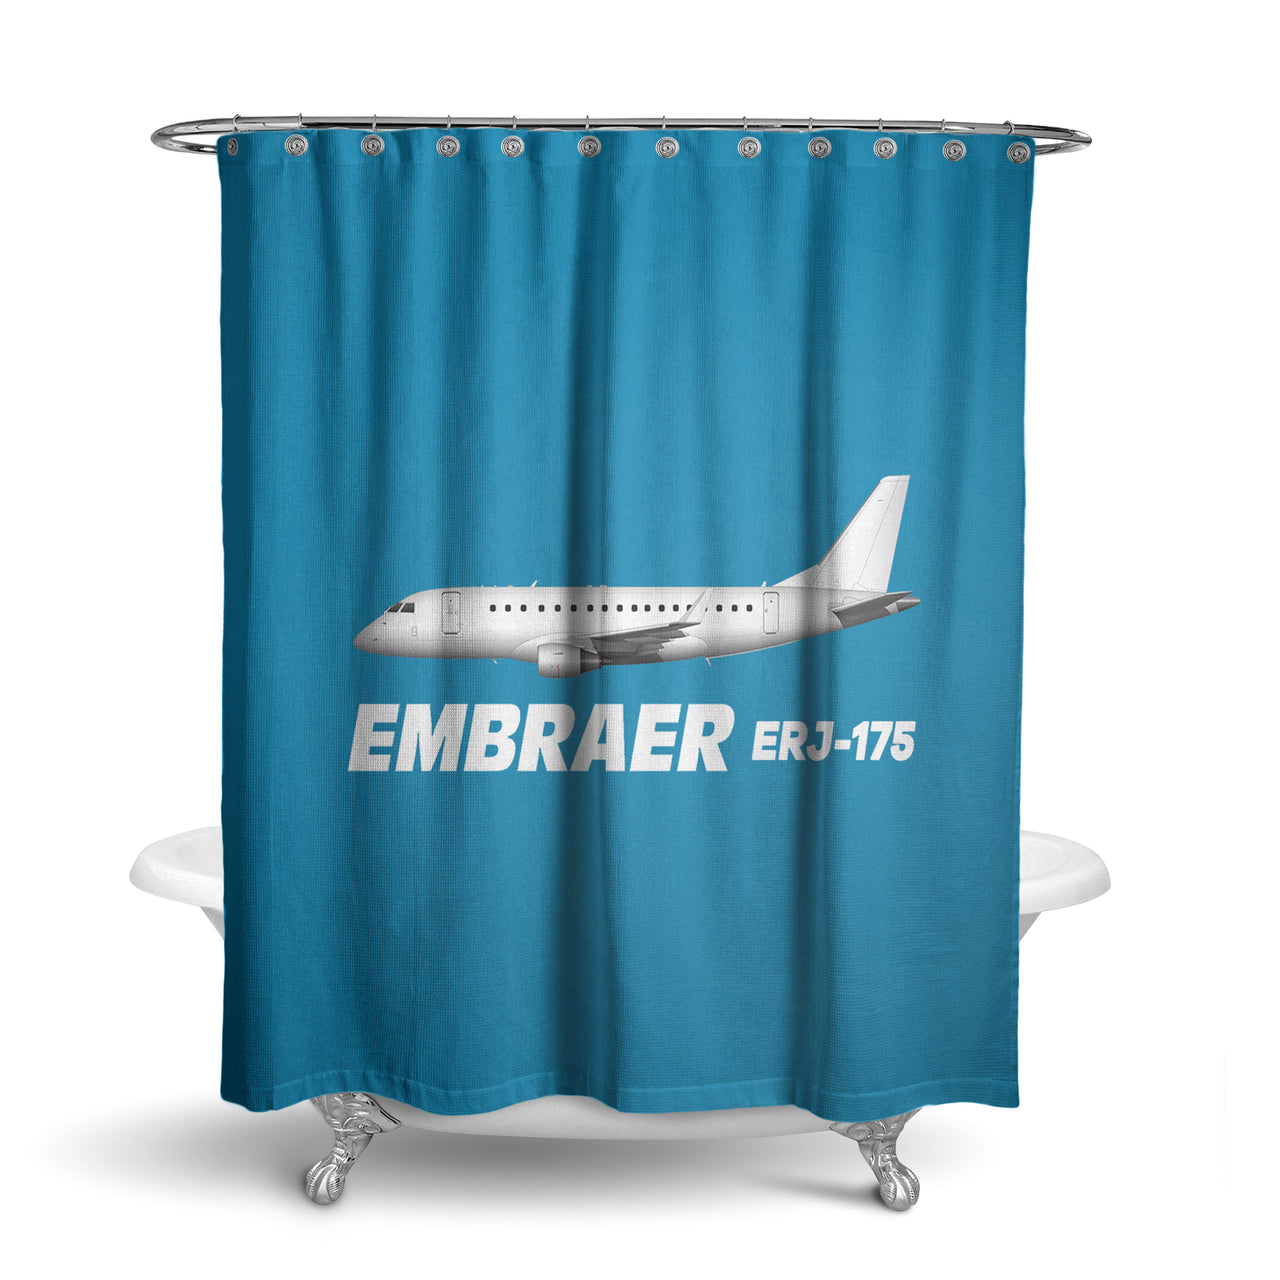 The Embraer ERJ-175 Designed Shower Curtains